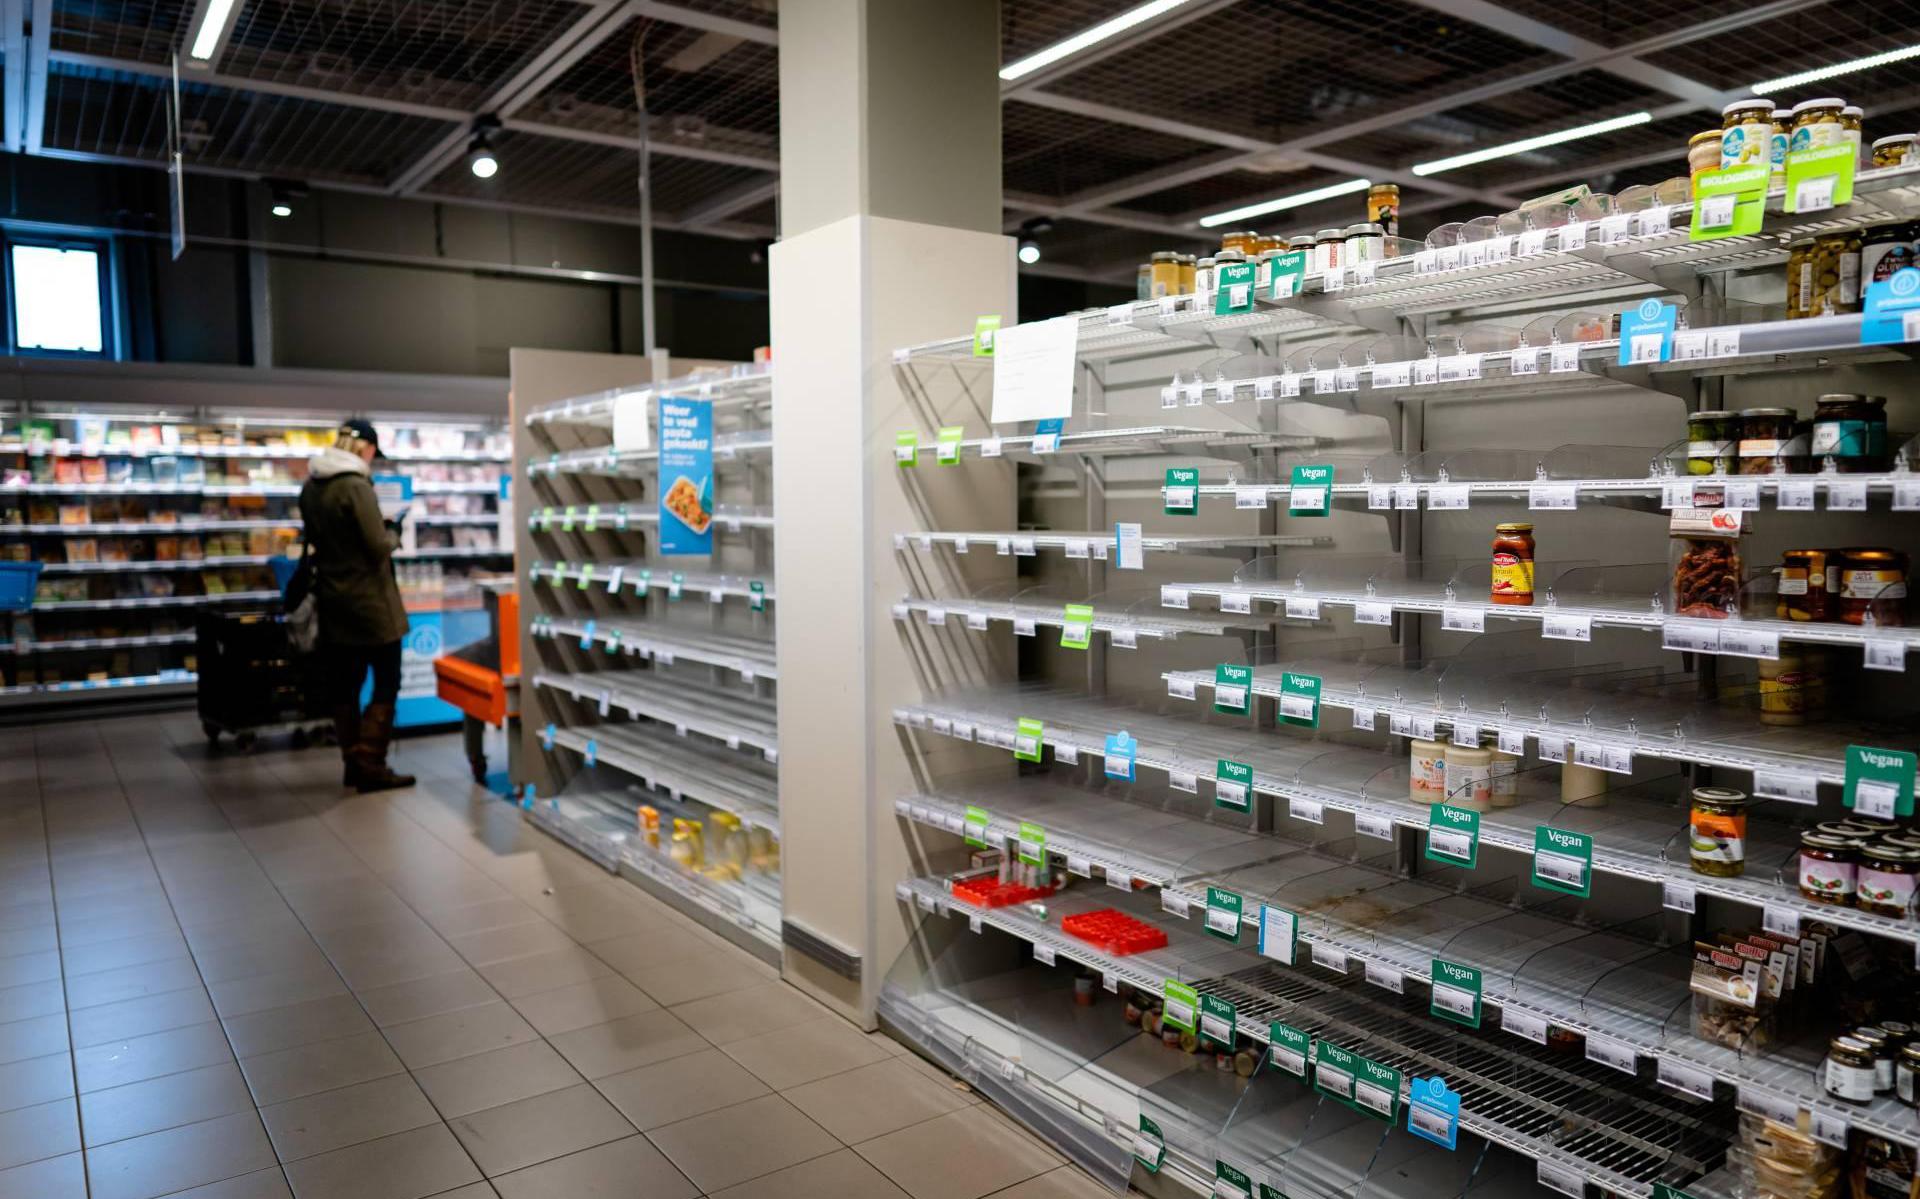 Bevoorrading supermarkt in gevaar in Groningen en andere provincies door sneeuw code oranje. Vertragingen in thuis bezorgen van boodschappen - het Noorden